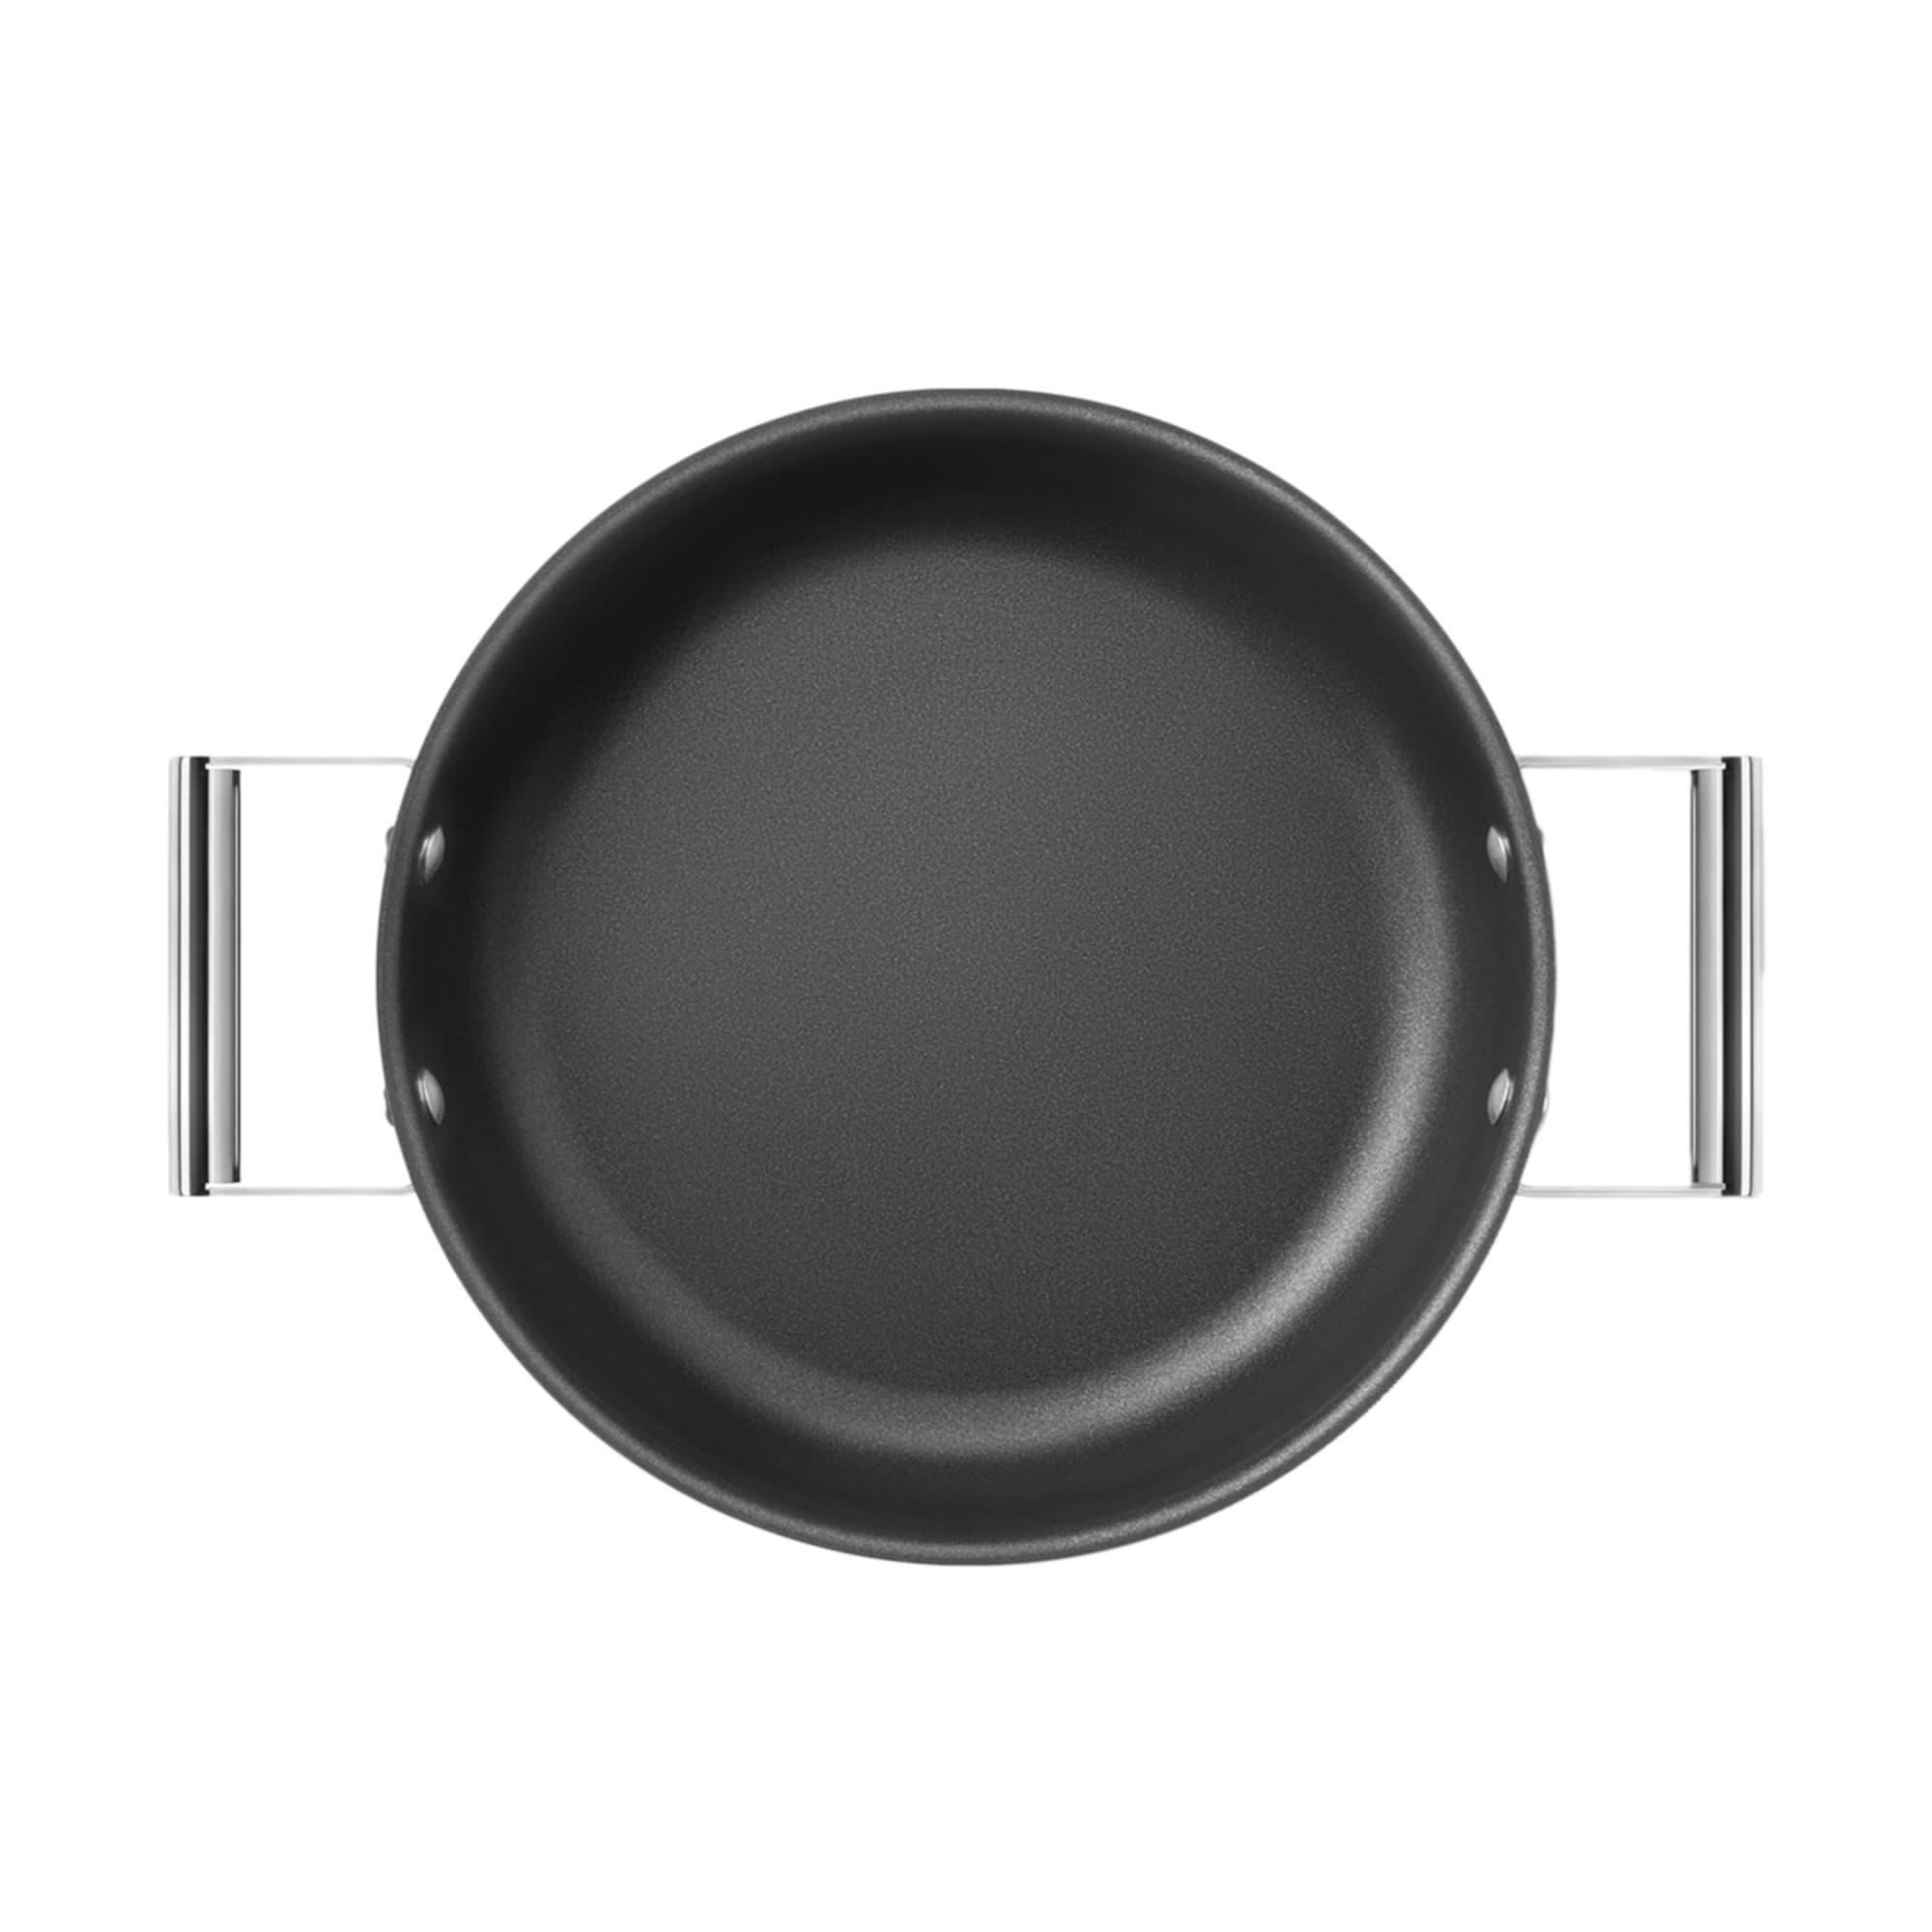 Smeg Non Stick Chef's Pan with Lid 28cm - 3.7L Black Image 12